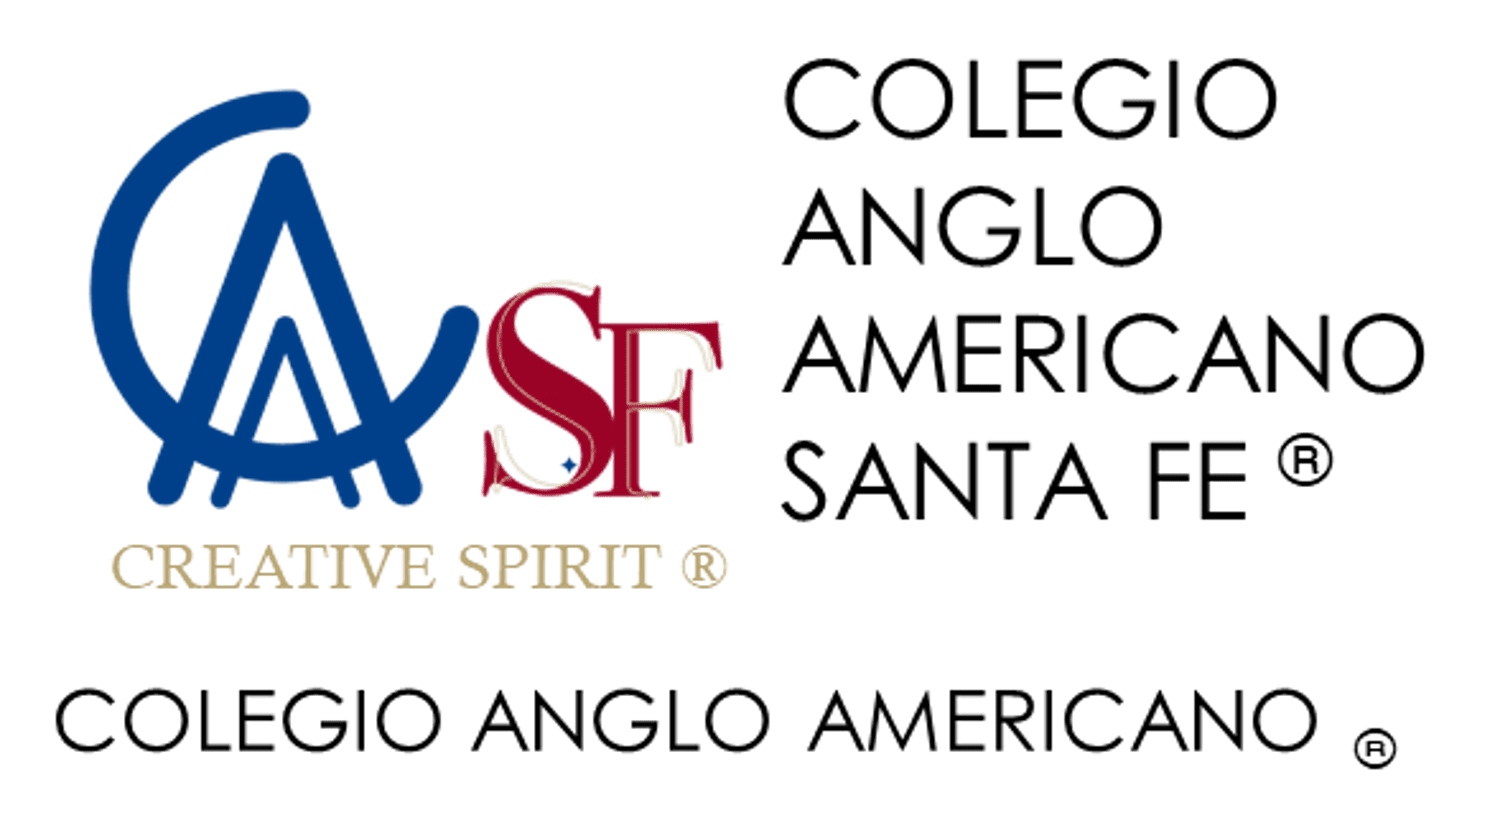 Colegio Anglo Americano Santa Fe